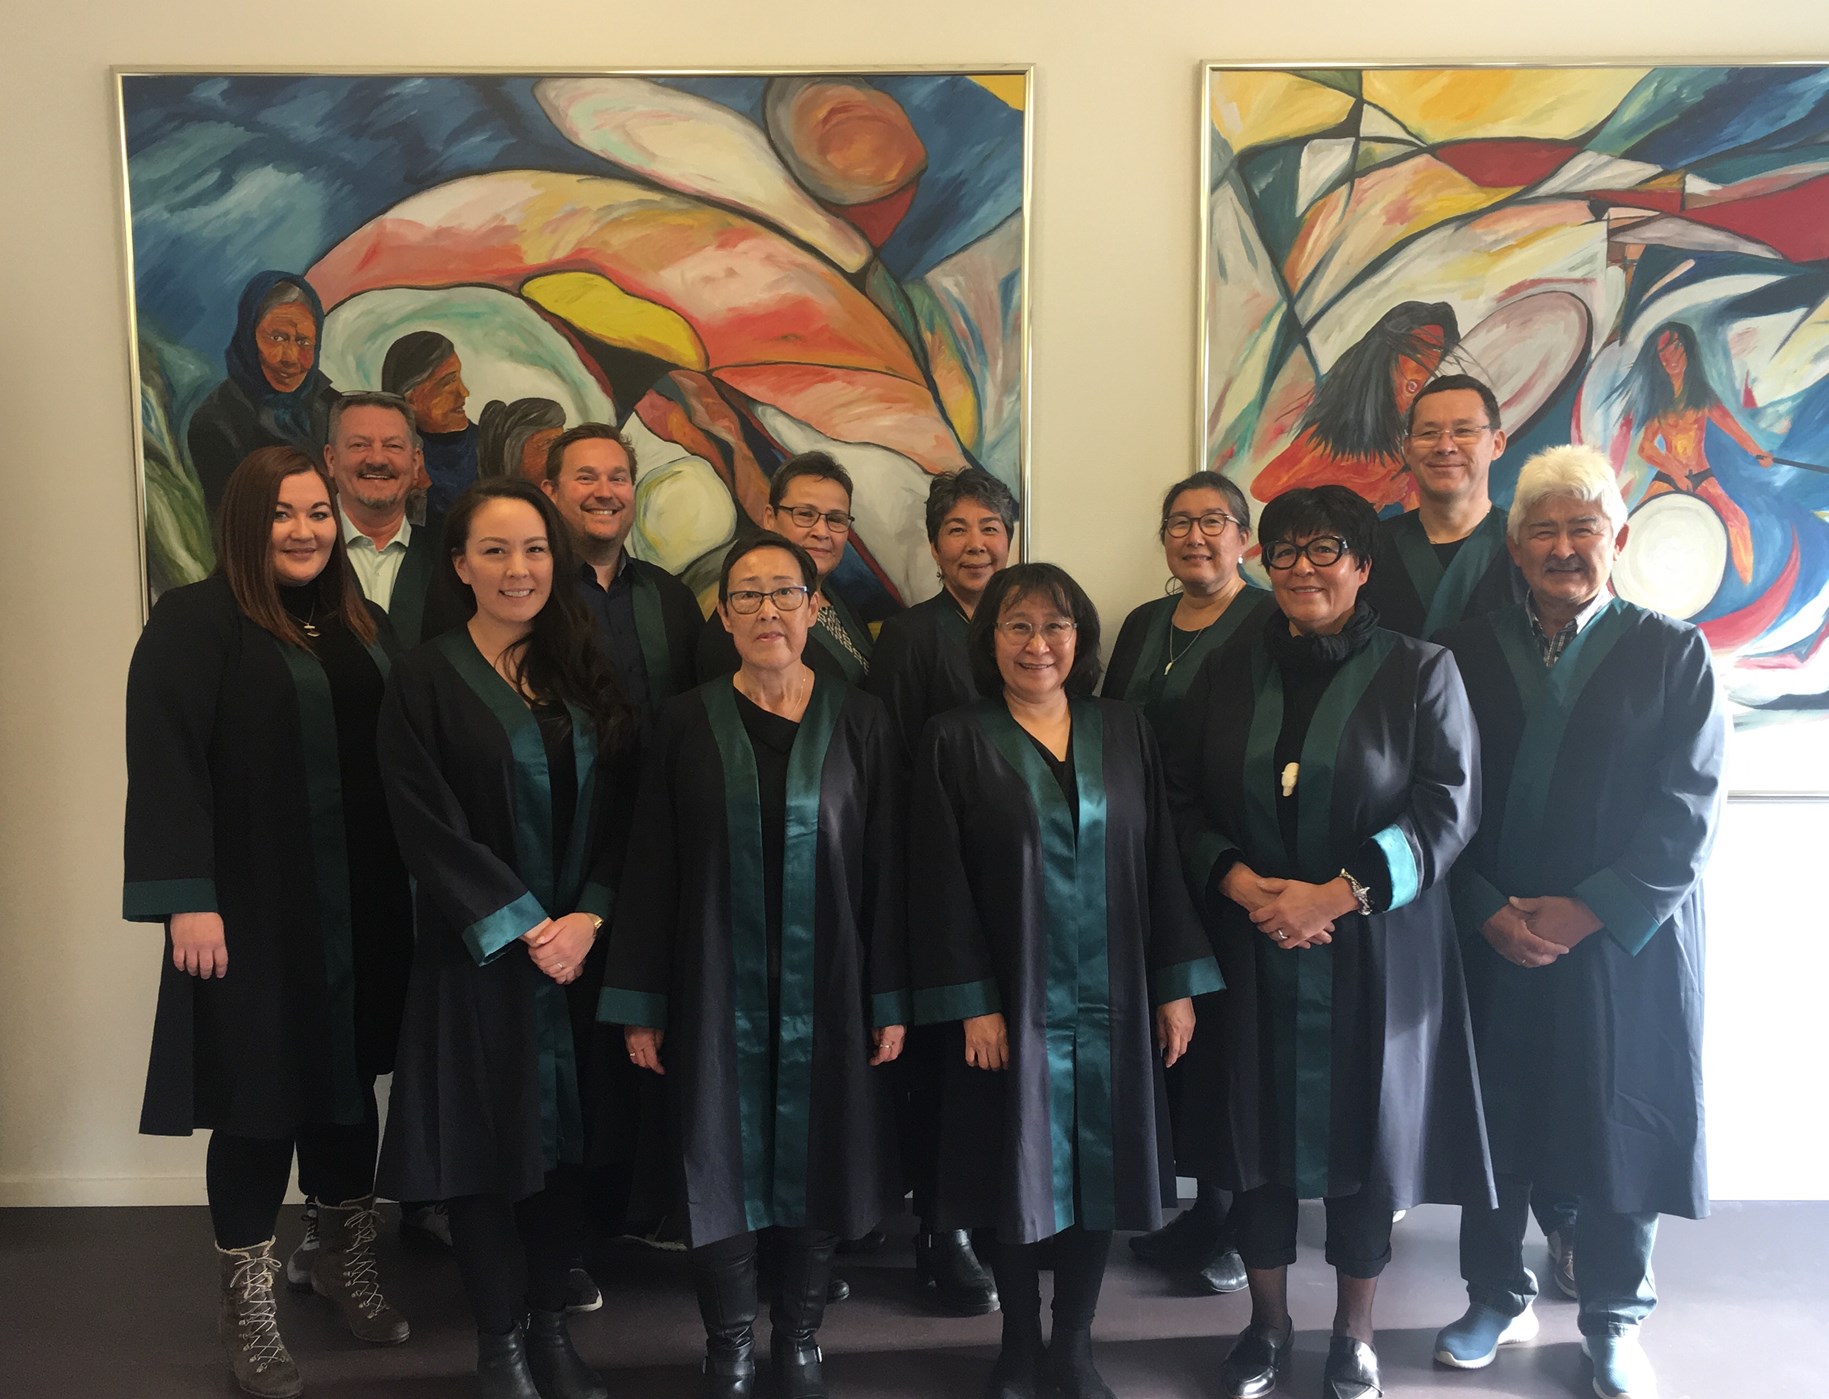 Dommere ved Grønlands Domstole iført kapper